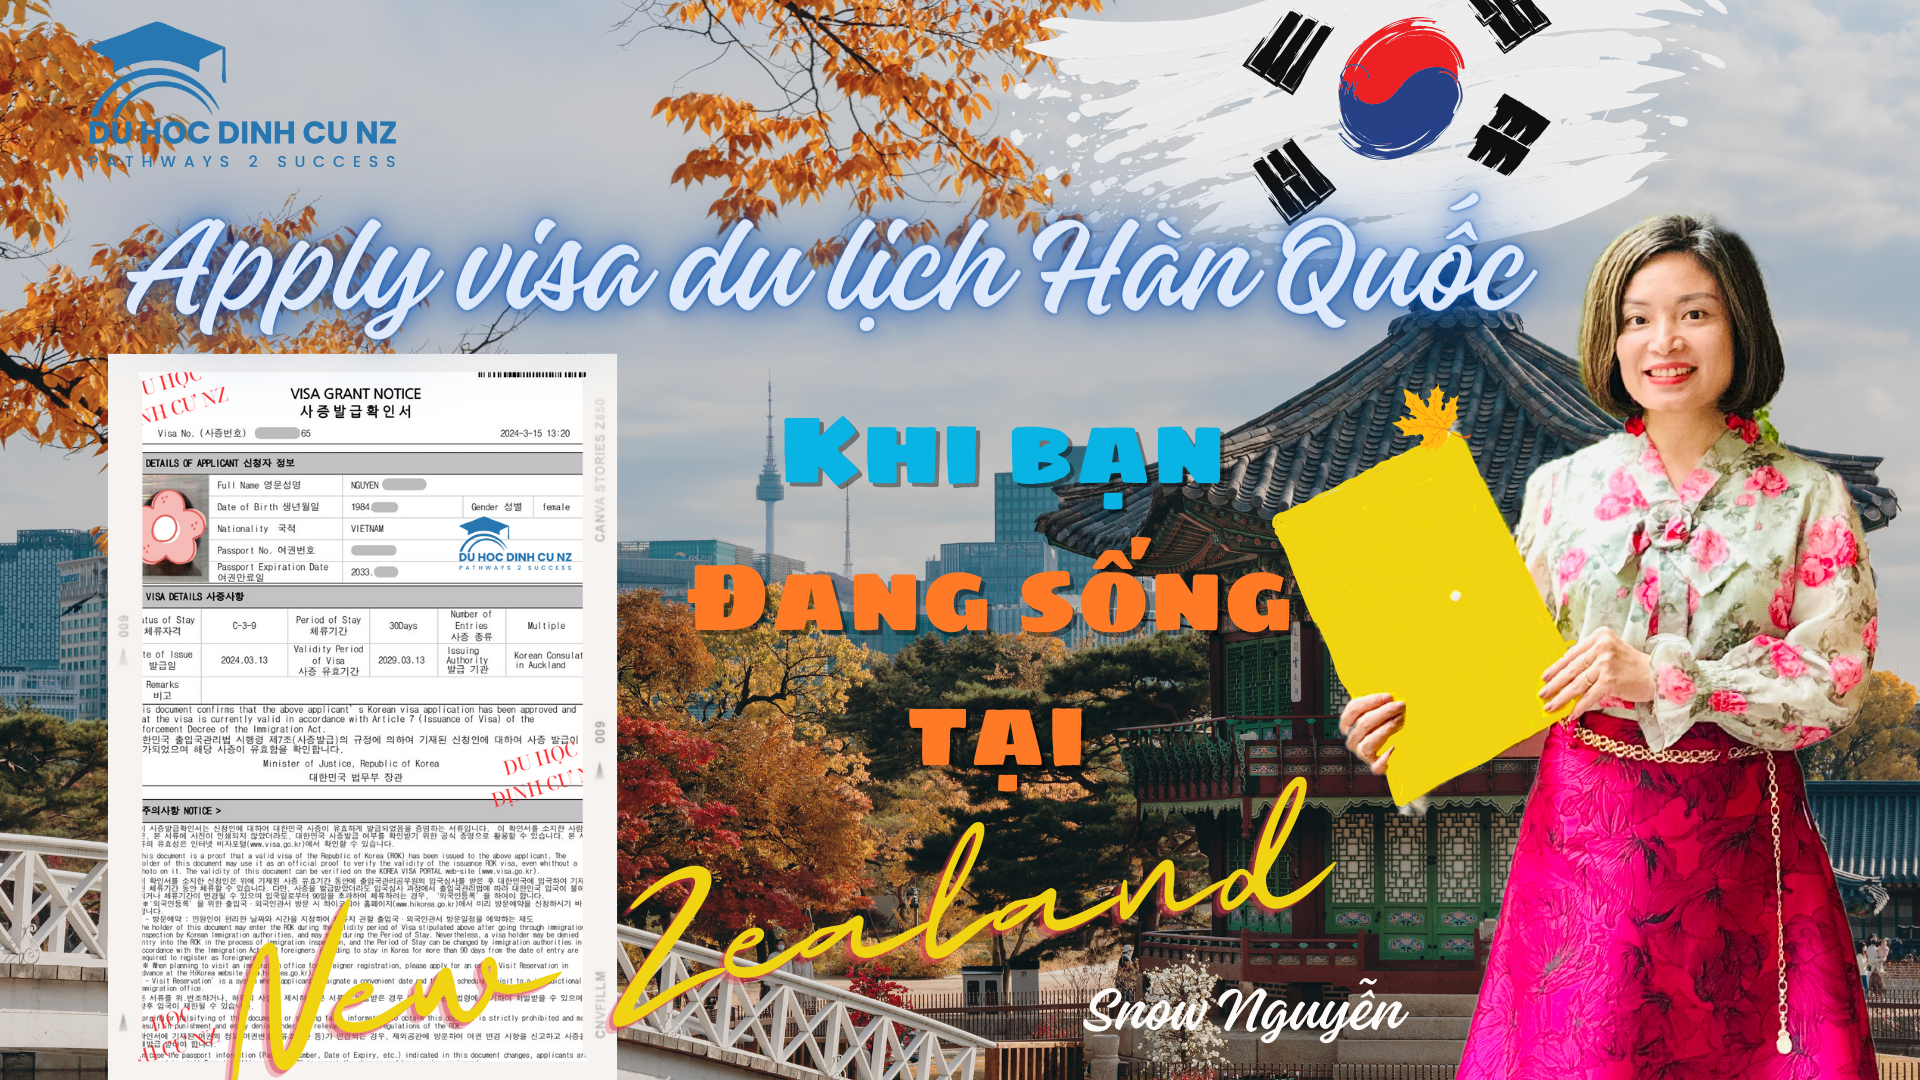 Kinh nghiệm xin visa du lịch Hàn Quốc khi đang sinh sống tại New Zealand